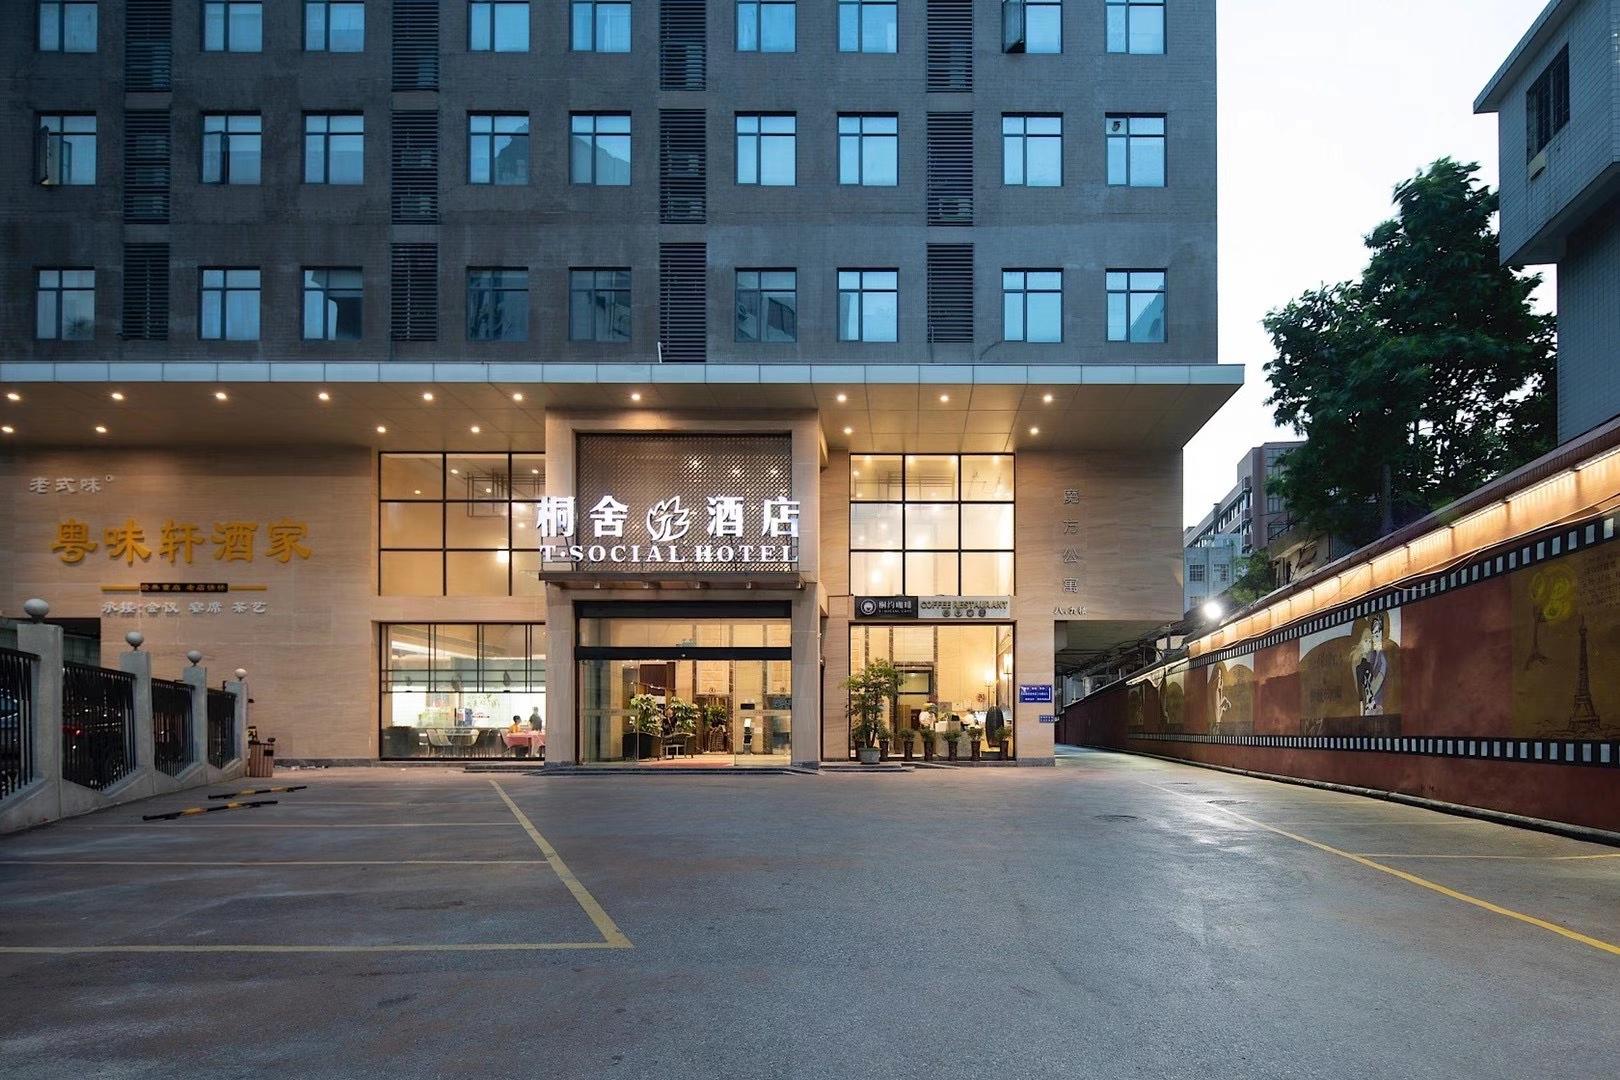 广州三星级酒店最大容纳200人的会议场地|广州桐舍酒店的价格与联系方式